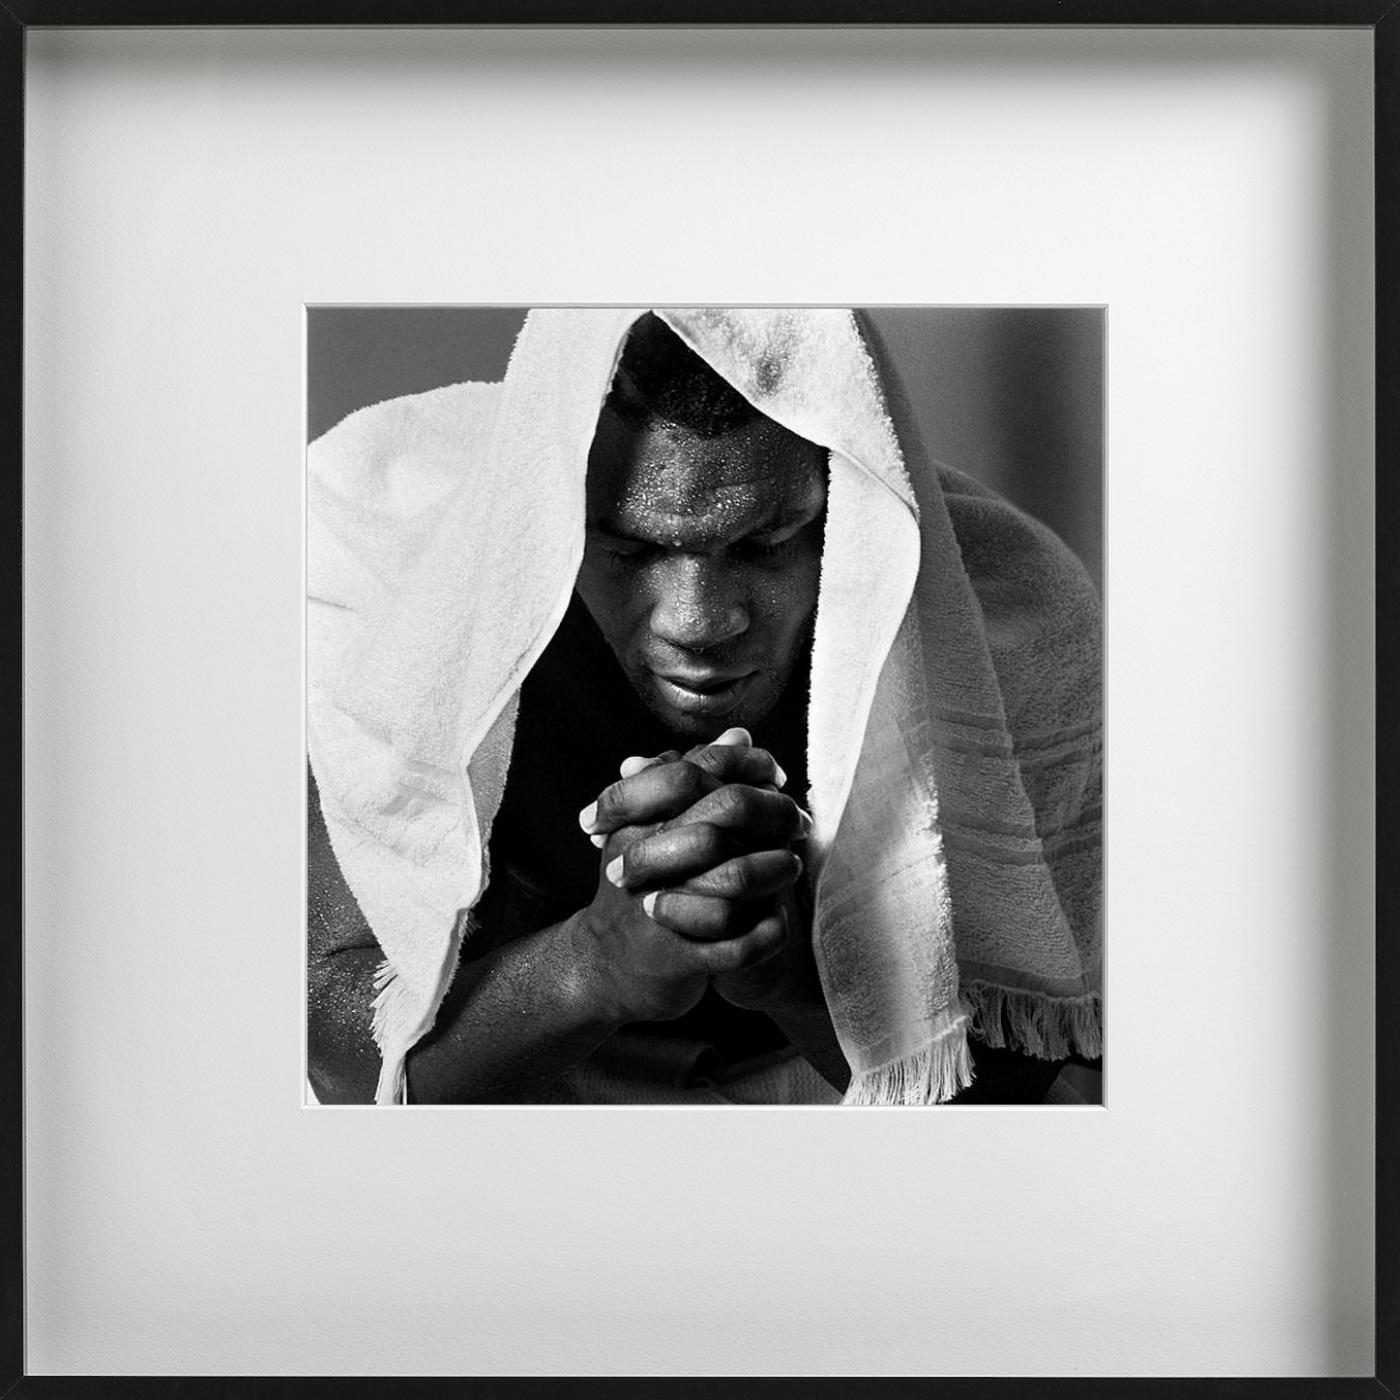 Camp de formation Mike Tyson - Portrait with towel, photographie d'art, 1990 - Contemporain Photograph par Michel Comte